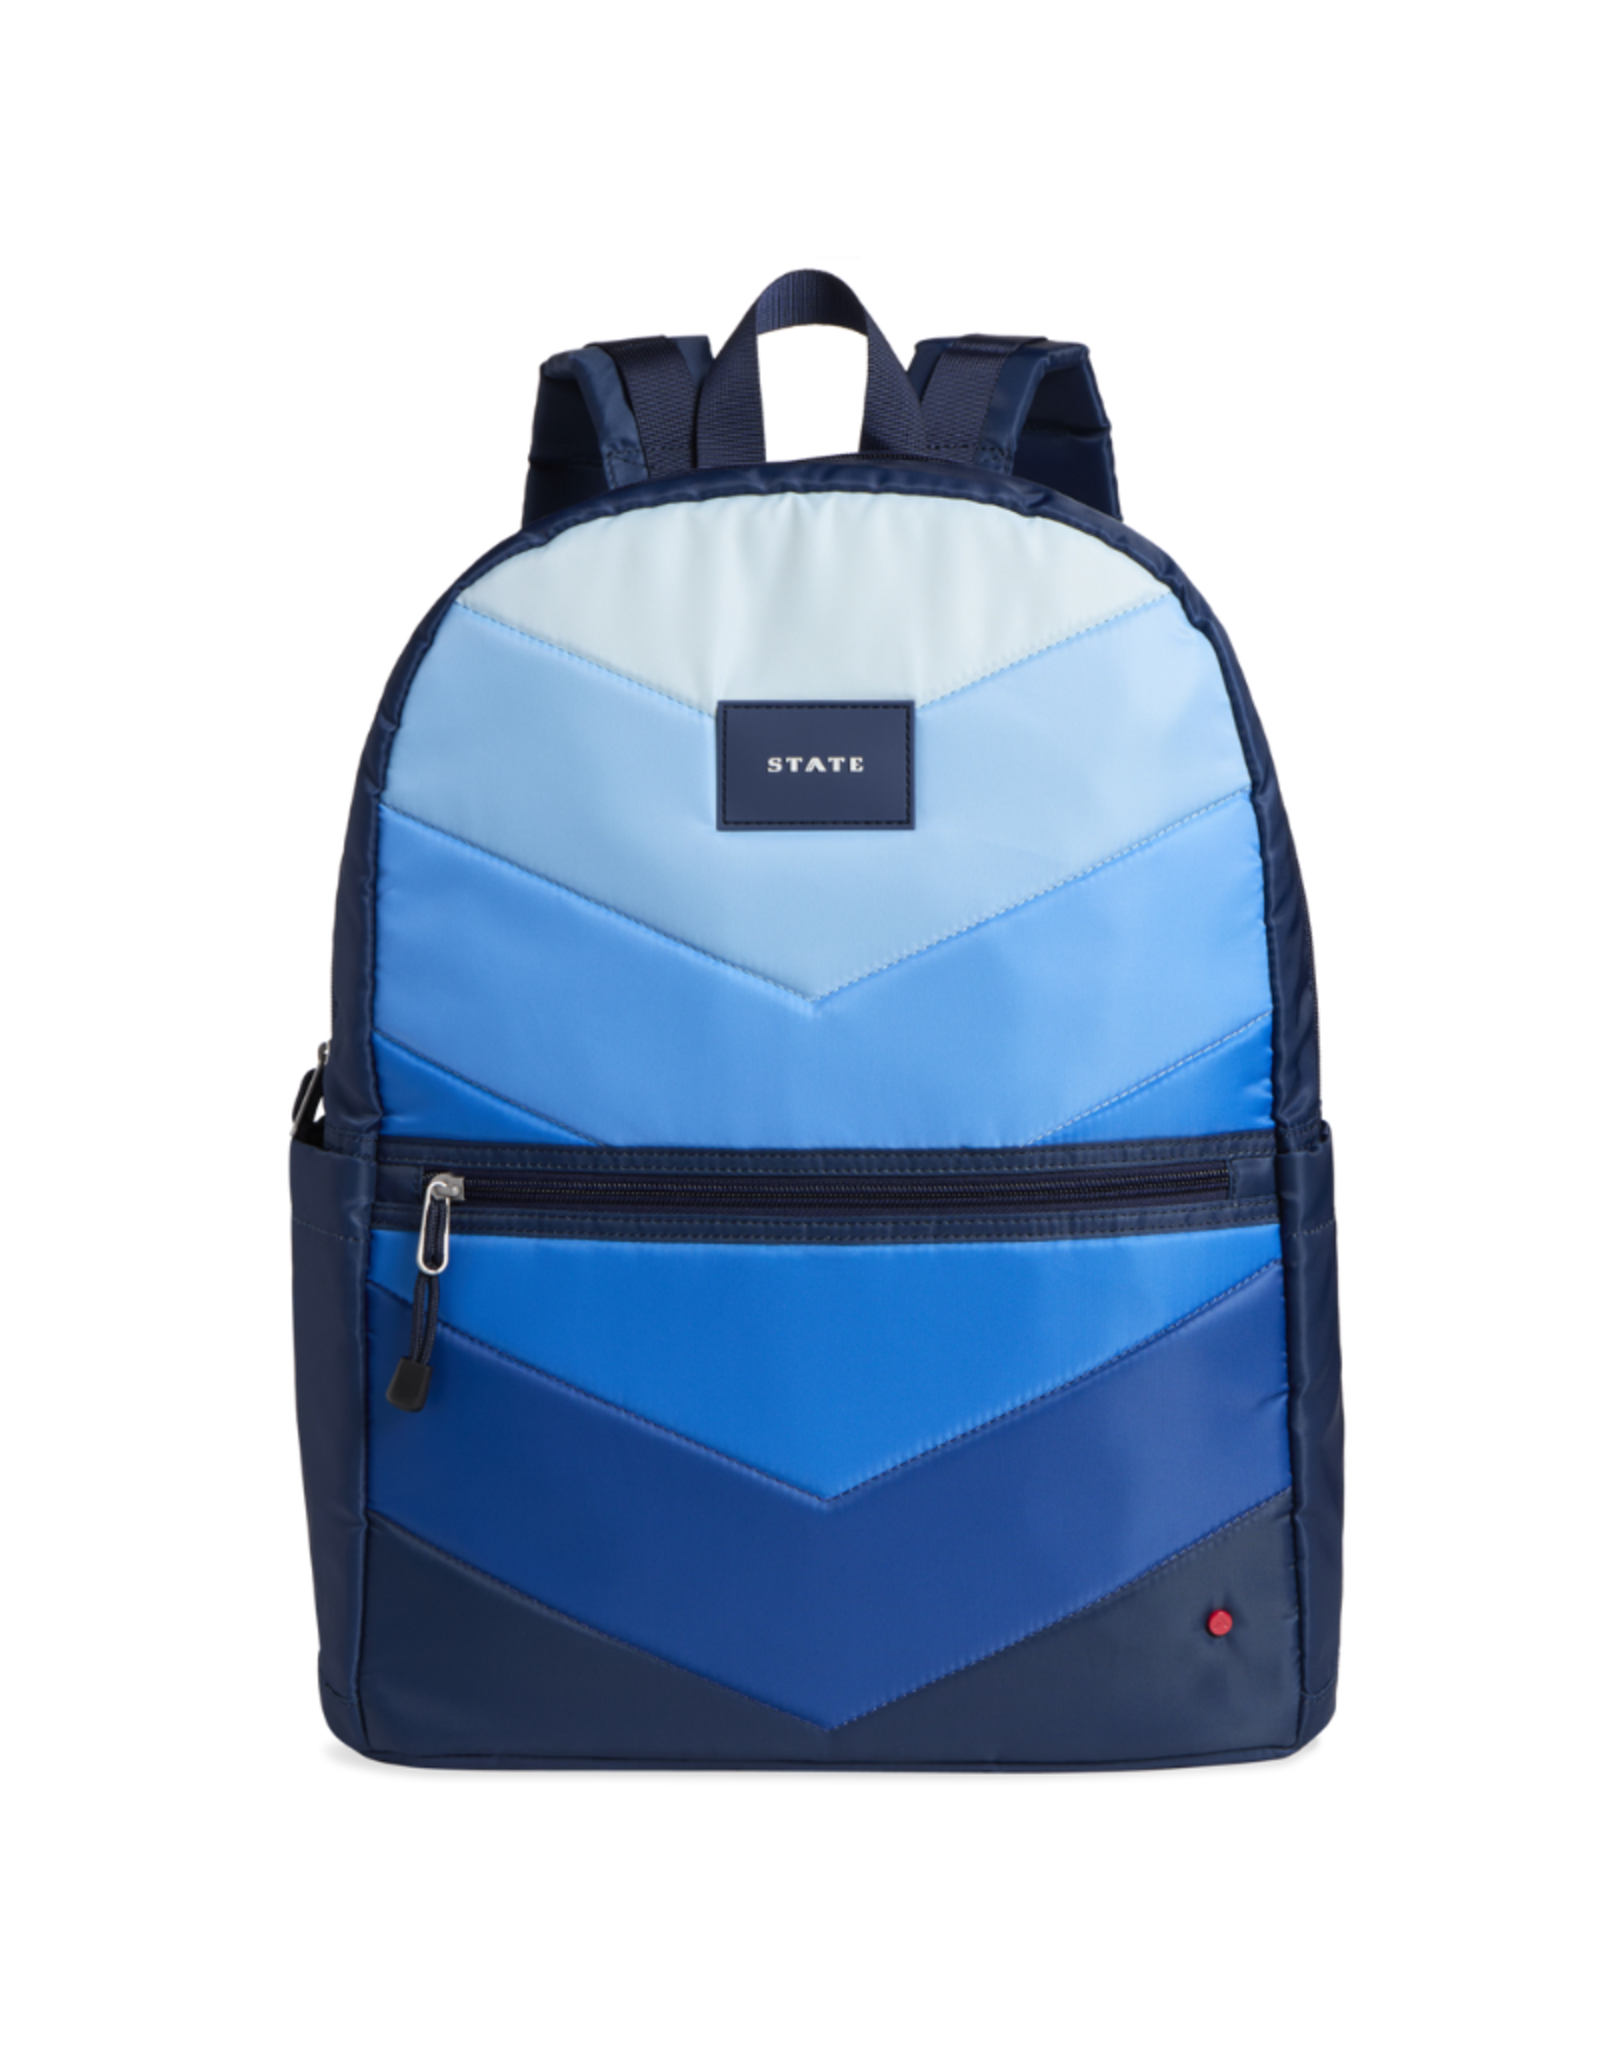 STATE Kane Kids Large Backpack - Blue